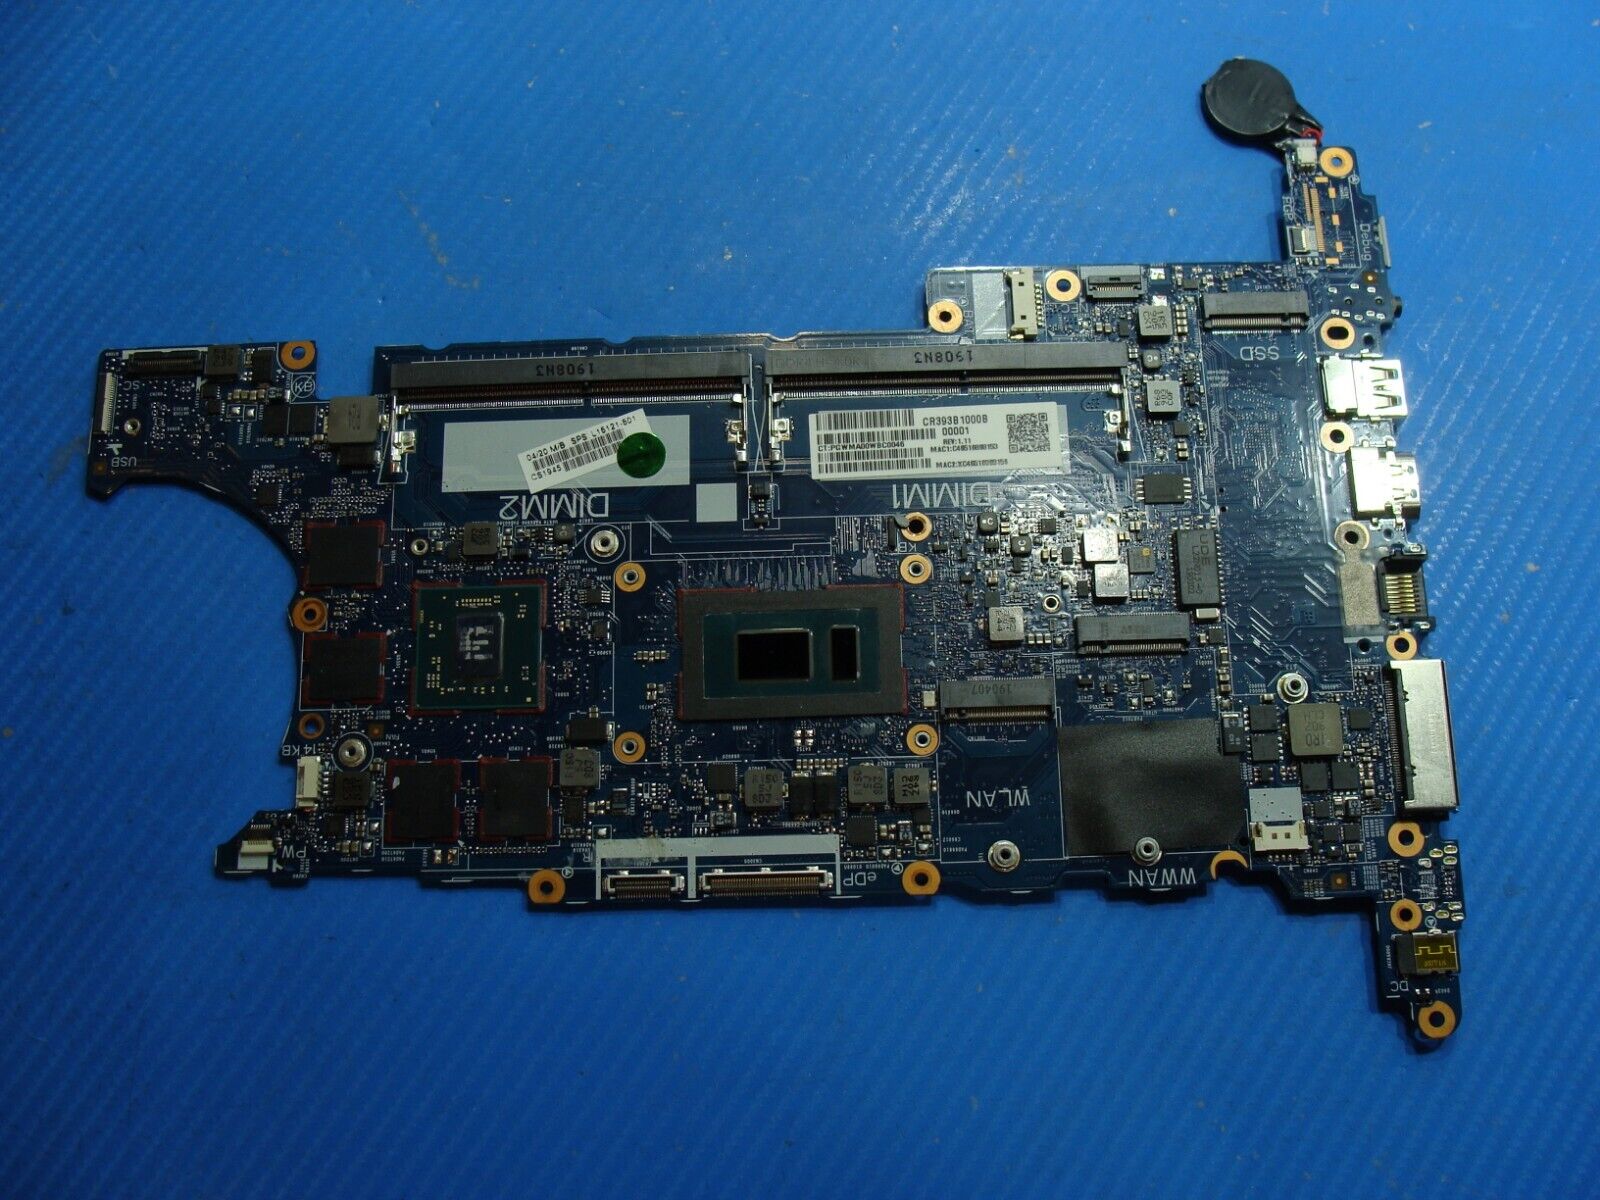 HP ZBook 14u G5 14